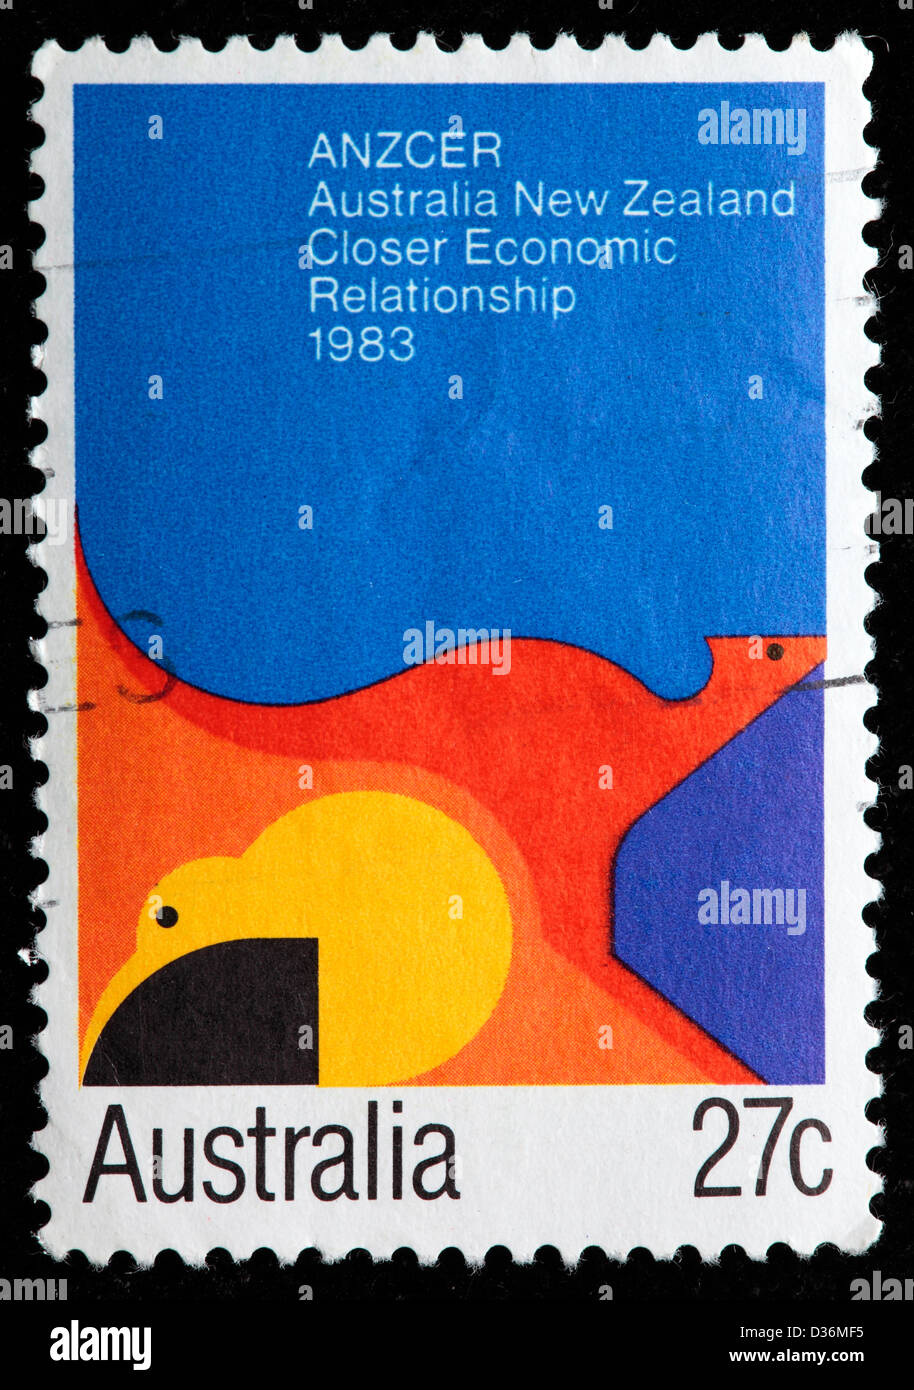 Australie Nouvelle-Zélande économiques plus étroites, timbre-poste, l'Australie, 1983 Banque D'Images